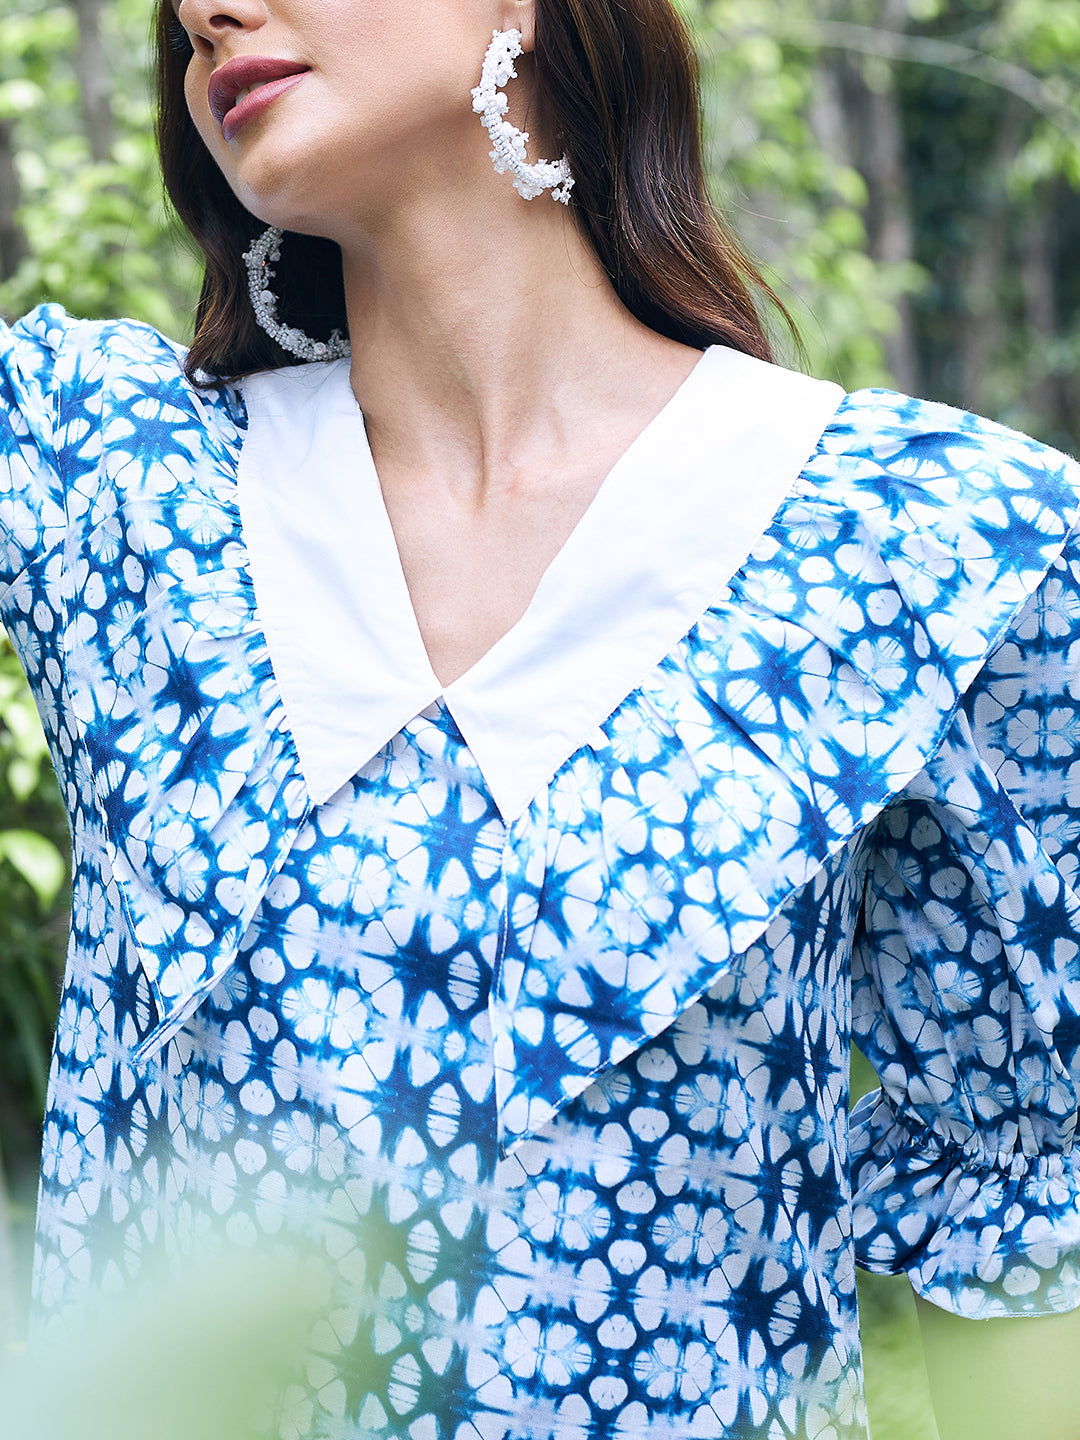 Athena Blue & White Printed Linen A-Line Midi Dress - Athena Lifestyle